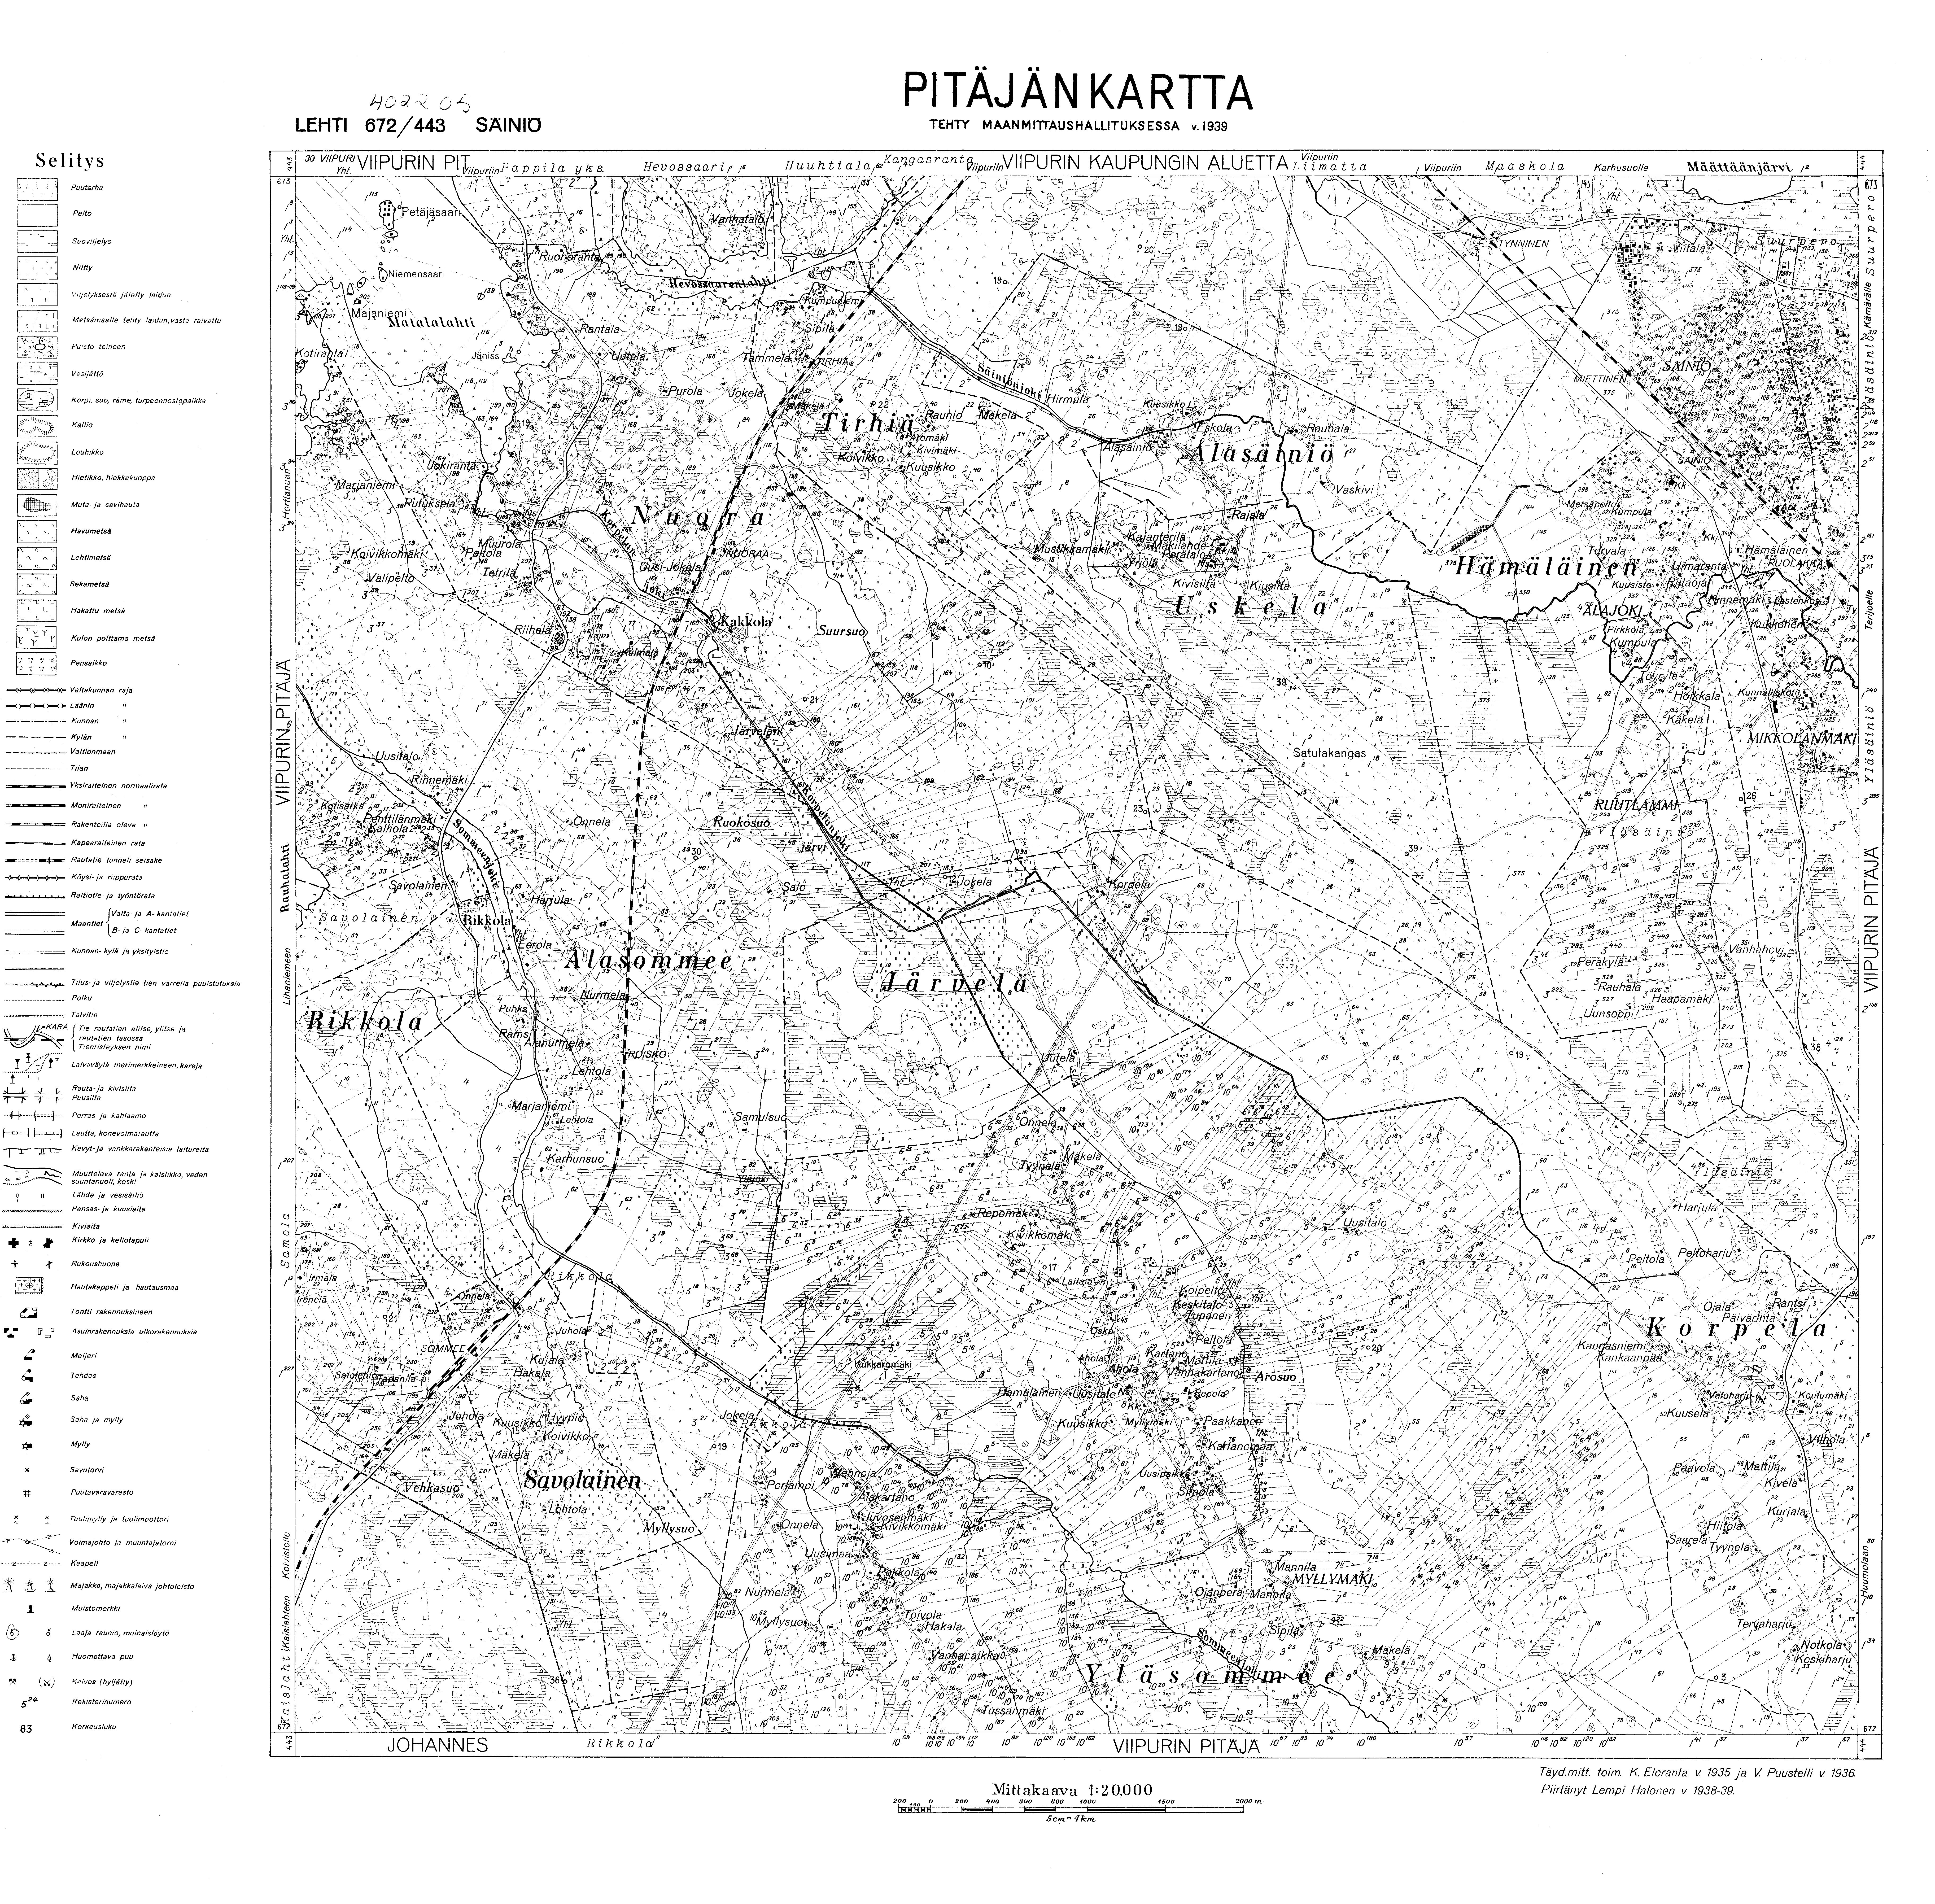 Verhne-Tšerkasovo. Säiniö. Pitäjänkartta 402205. Parish map from 1939